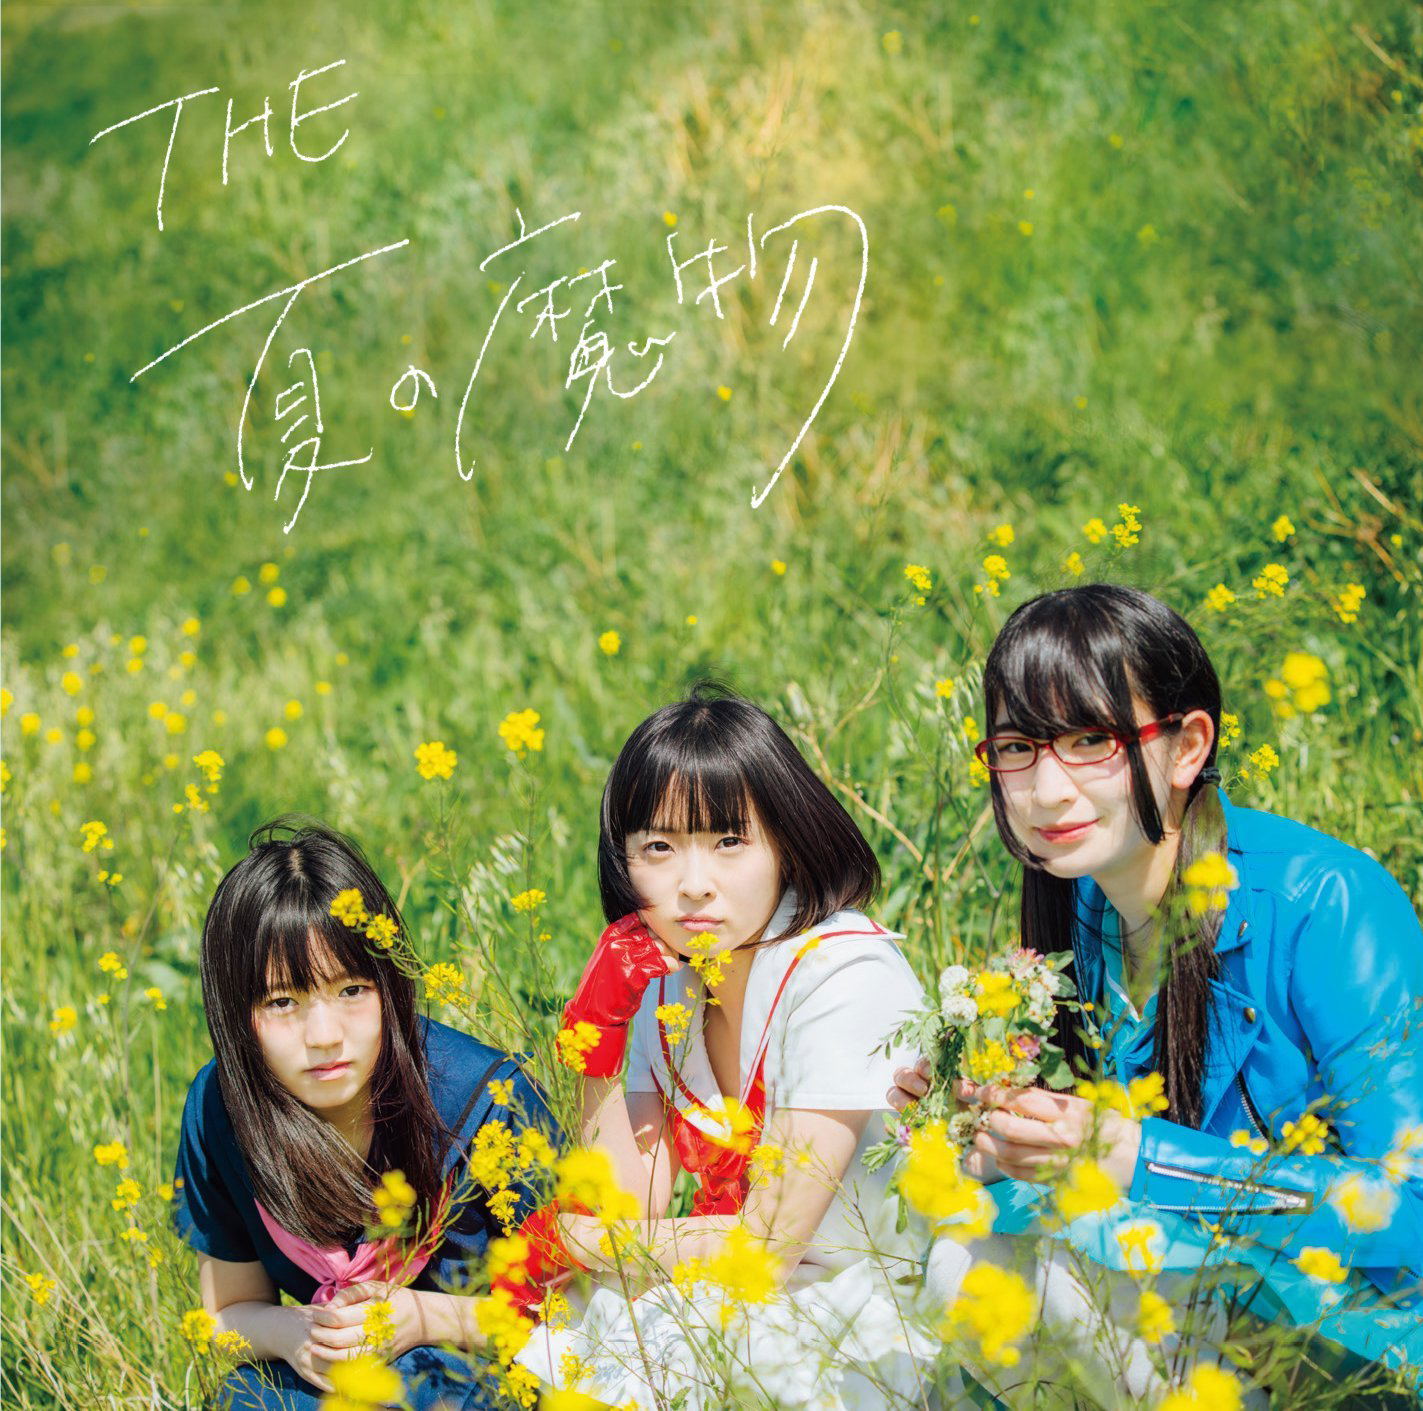 Shin Mamono Boma Ye Ep - Mamono Girls Edition (The Natsu No Mamono)